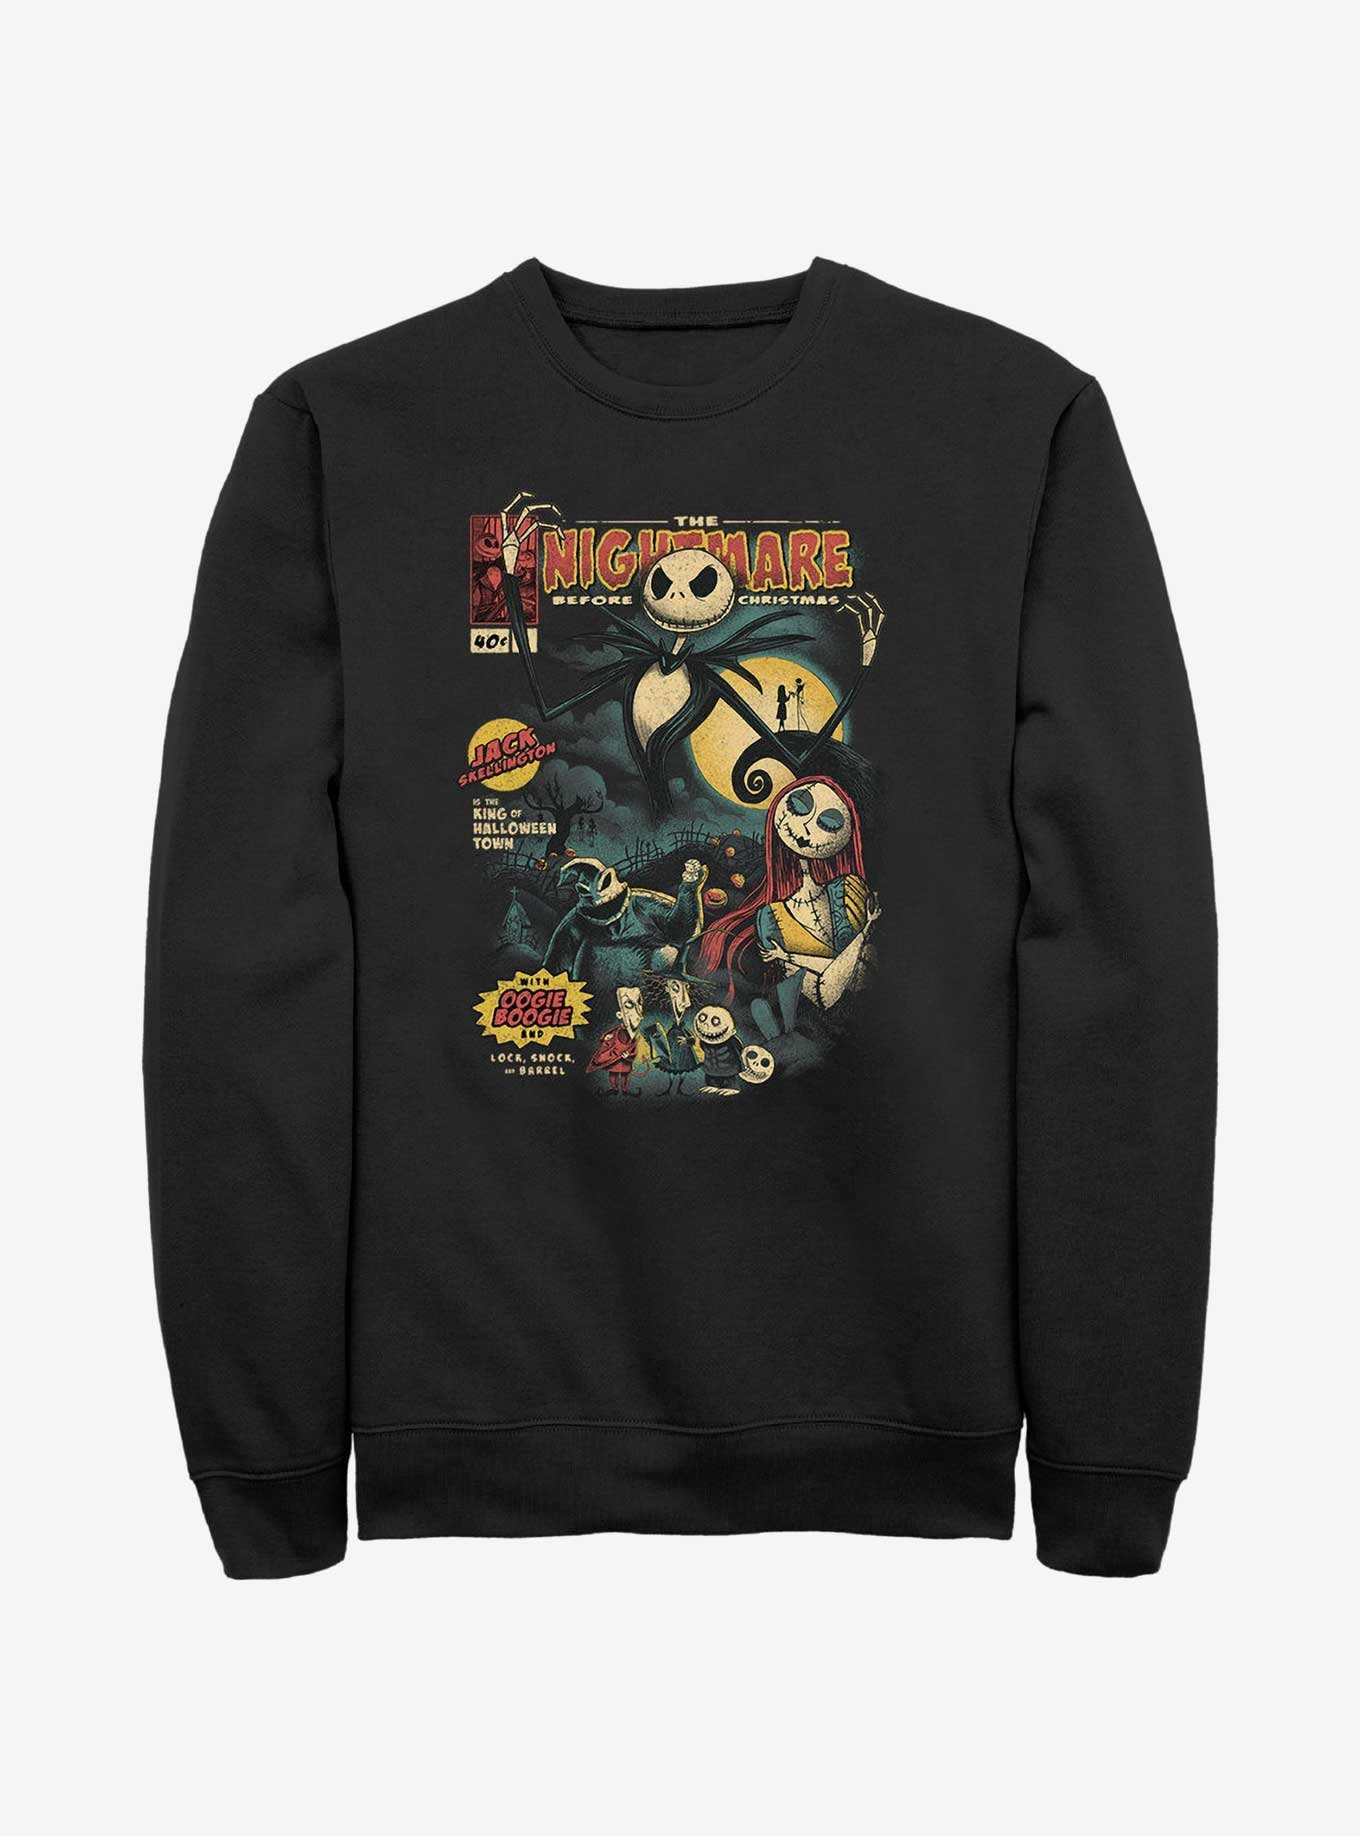 Disney The Nightmare Before Christmas Jack Skellington King of Halloween Comic Cover Sweatshirt, , hi-res